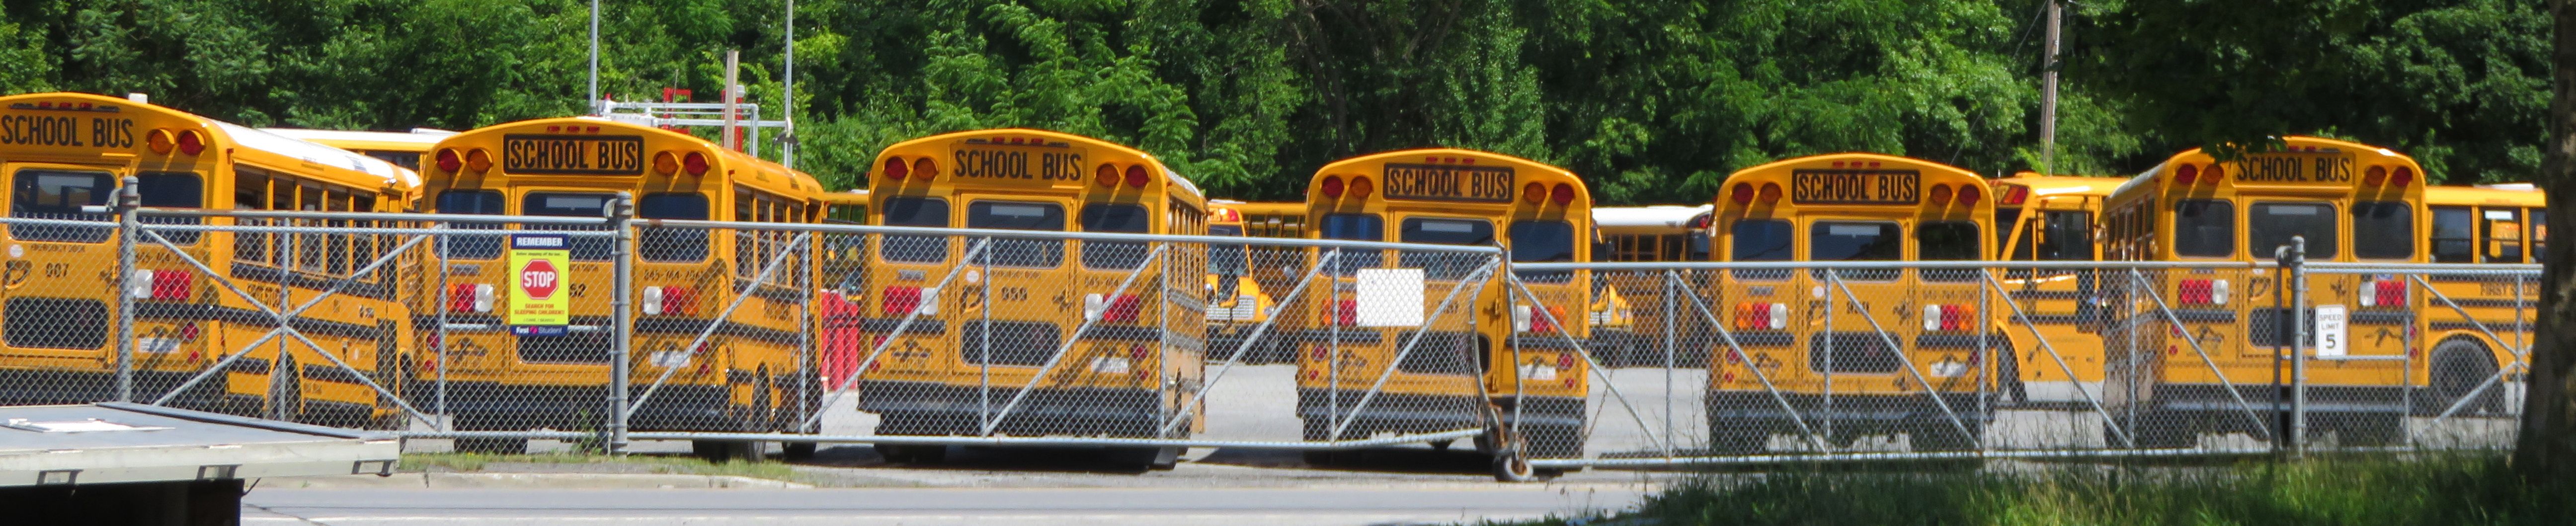 Stationnement rempli d'autobus scolaires